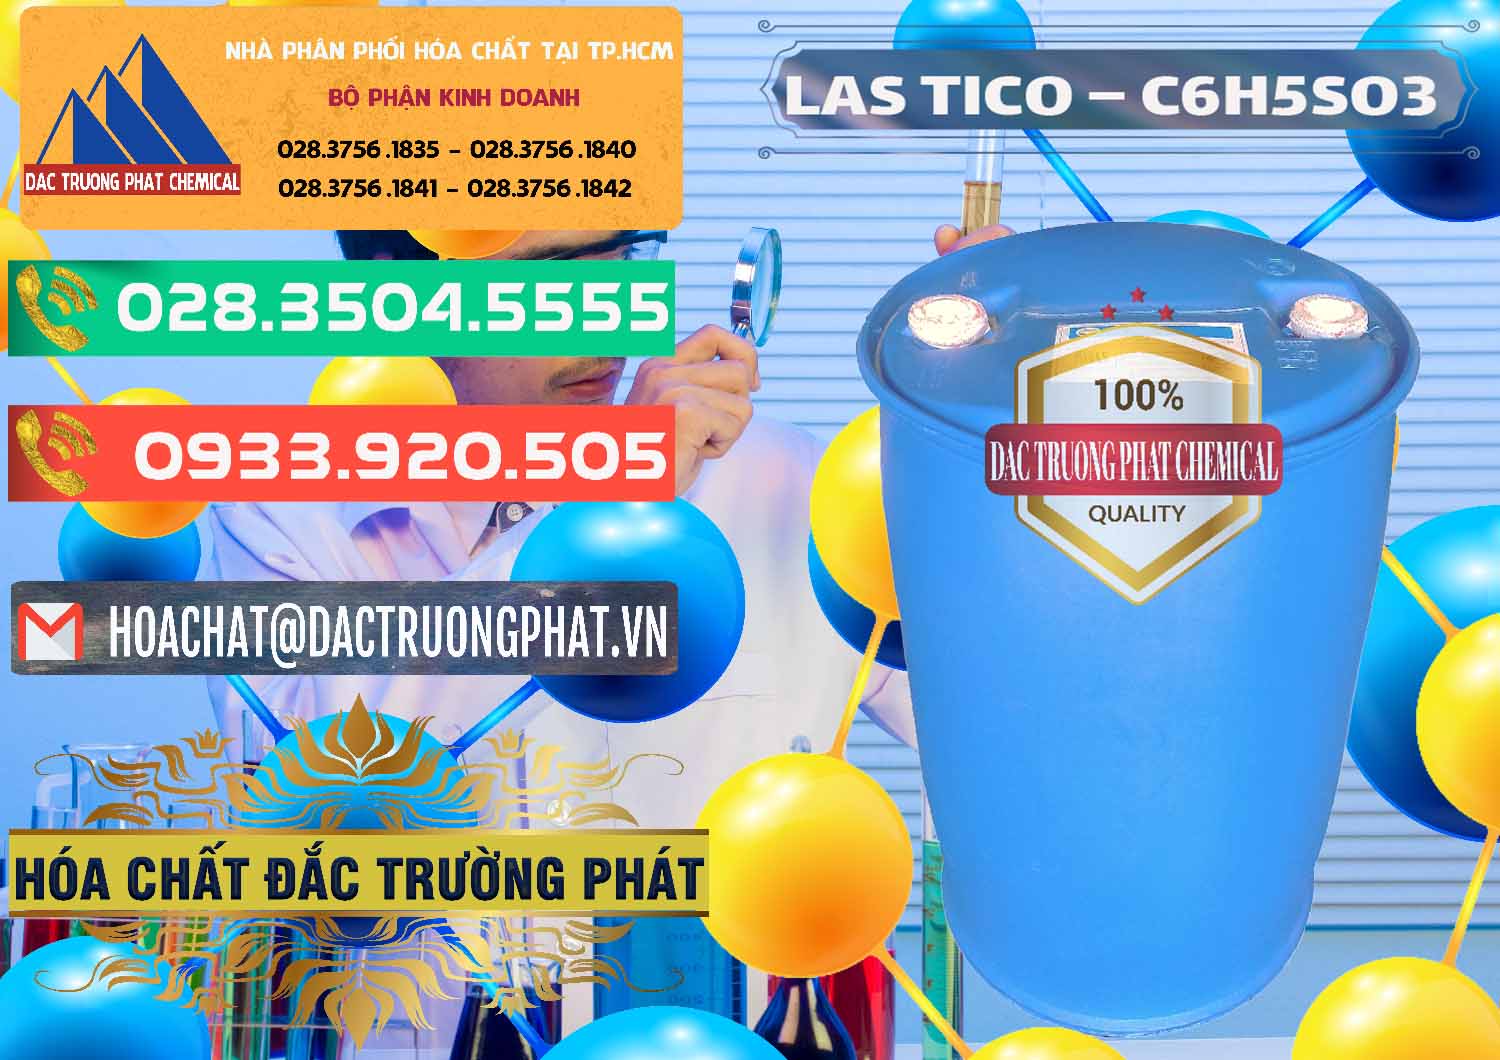 Công ty bán - phân phối Chất tạo bọt Las H Tico Việt Nam - 0190 - Chuyên kinh doanh và phân phối hóa chất tại TP.HCM - congtyhoachat.com.vn